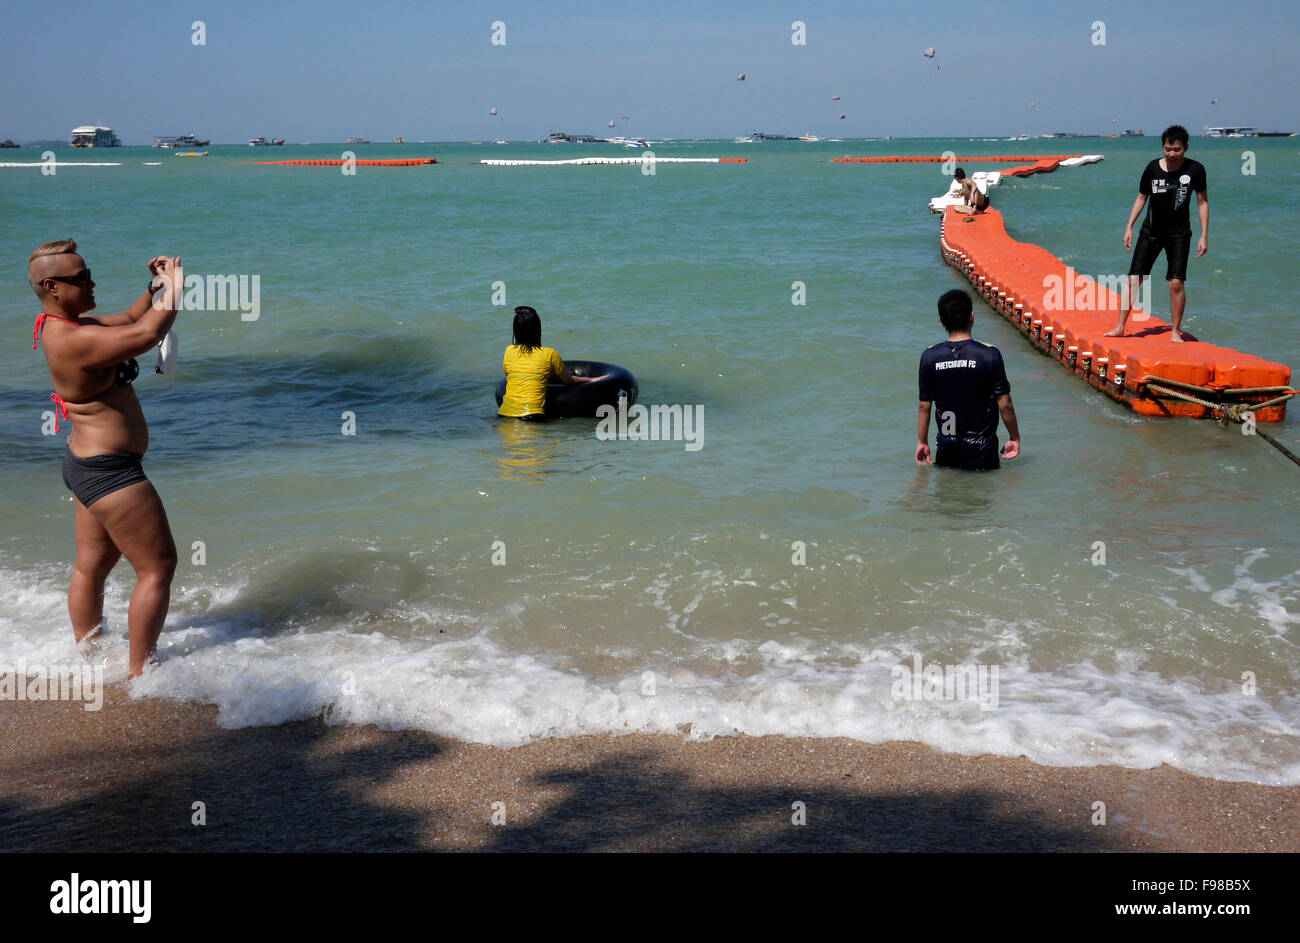 Ein sicheren Schwimmbereich zeichnet sich aus durch verknüpfte Floater / Bojen am Strand von Pattaya Thailand zum Schutz der Schwimmer von Jet-Skis etc. Stockfoto